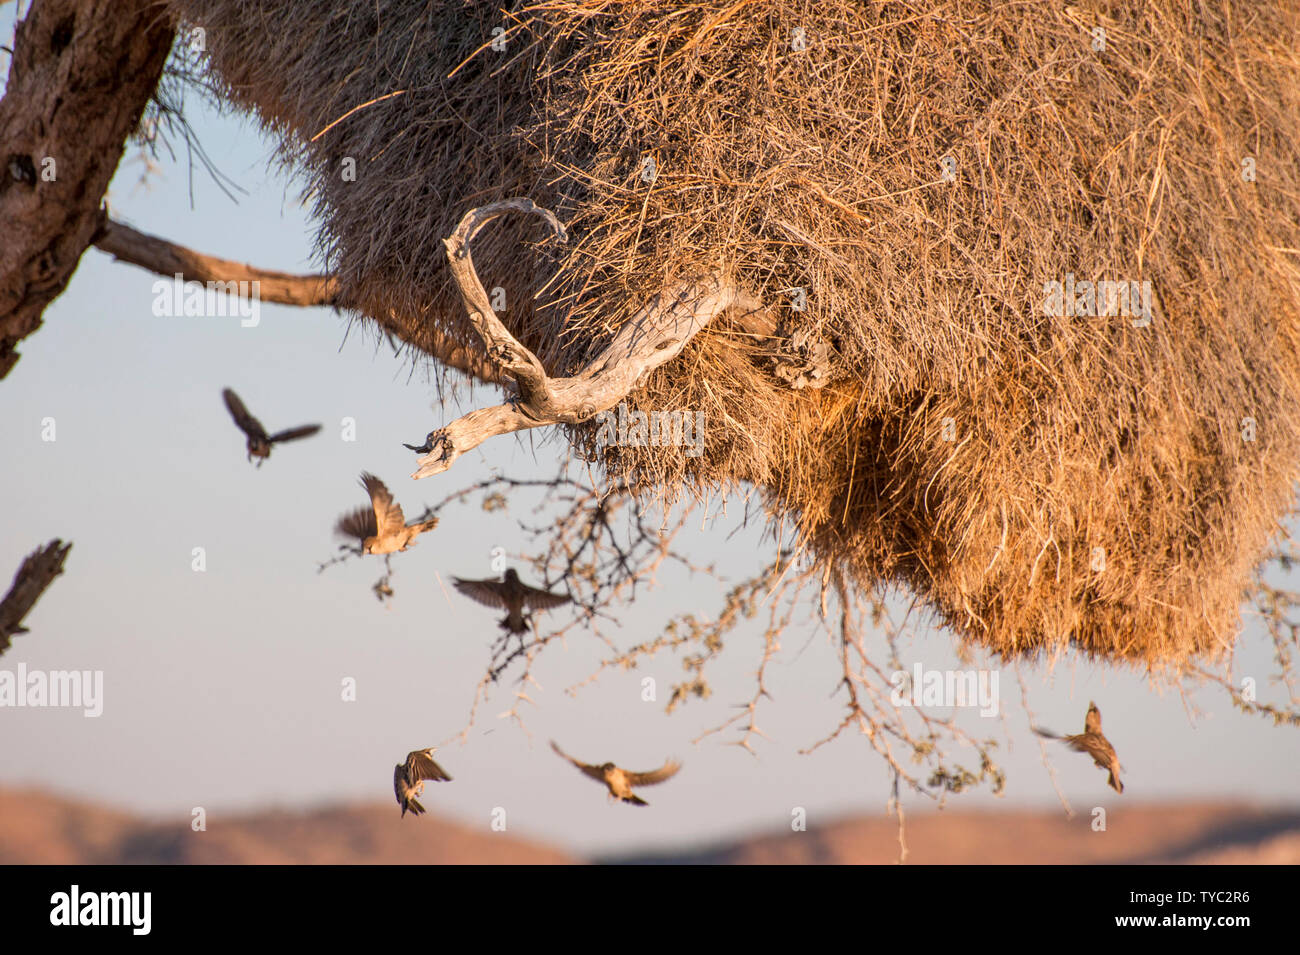 Kontaktfreudig Weber (Philetairus socius) an ihrem Nest. Die geselligen Weber baut große Gemeinschaftsküche Nester. Bis zu 400 Vögeln kann ein Nest, die bewohnen Stockfoto